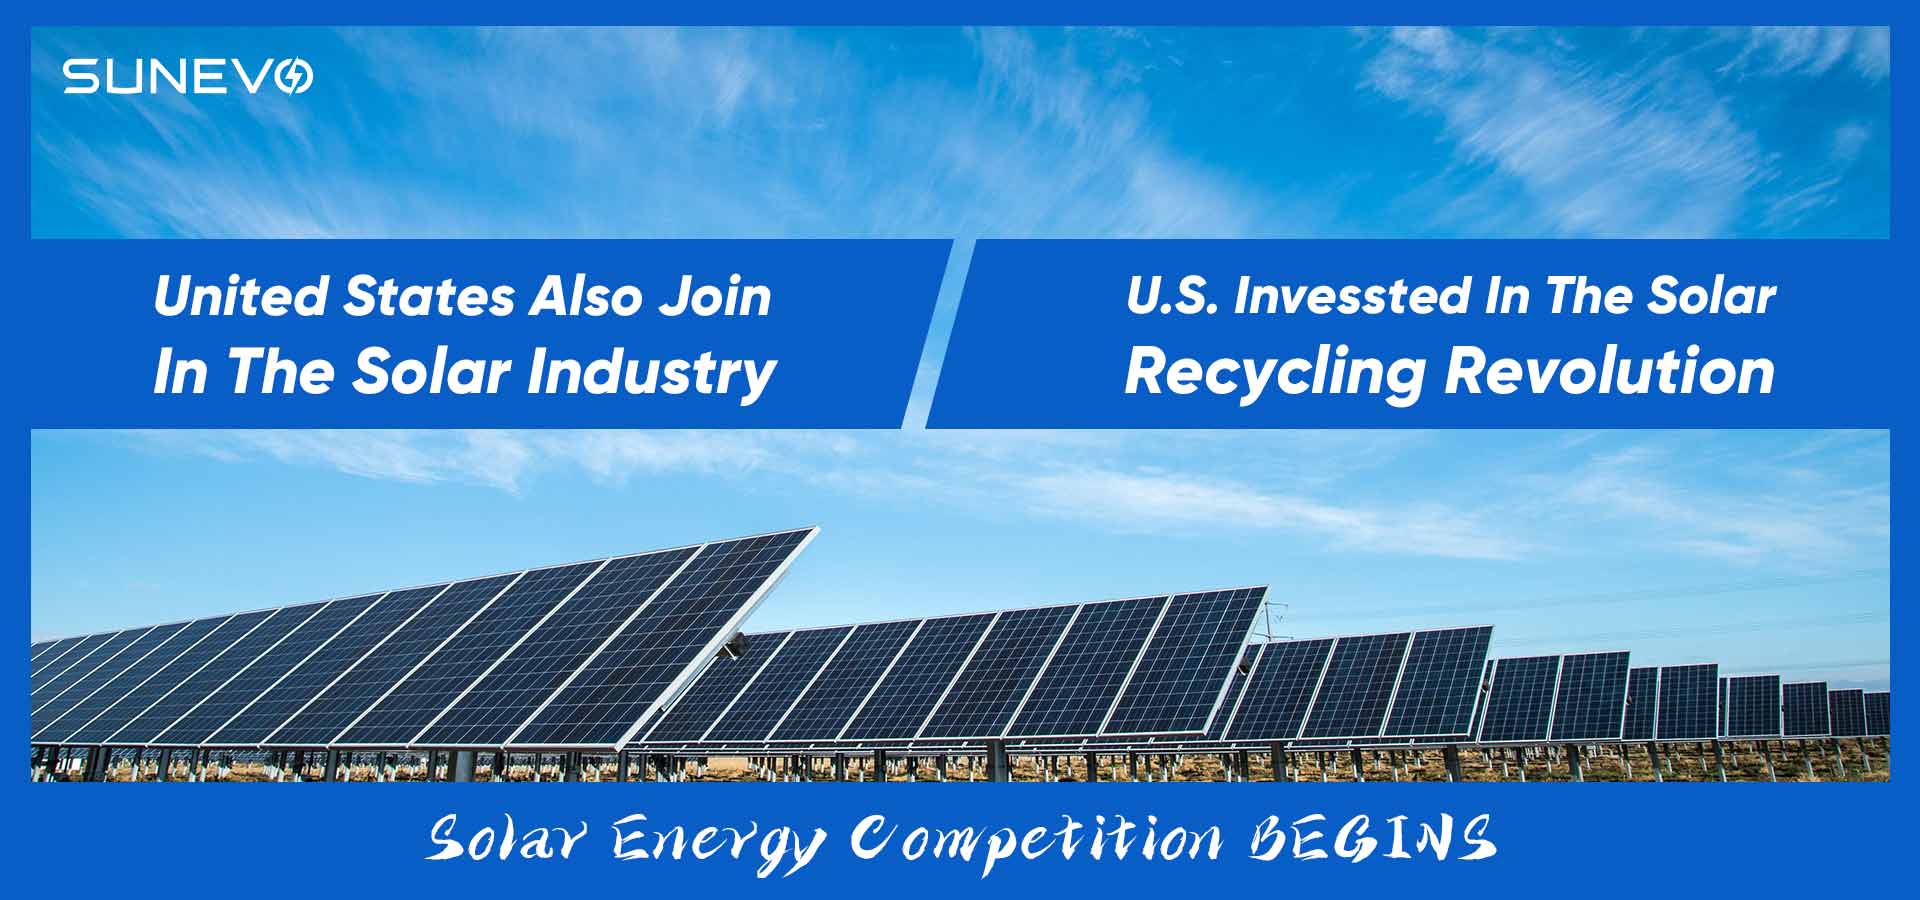 Investimenti statunitensi nella rivoluzione del riciclaggio solare